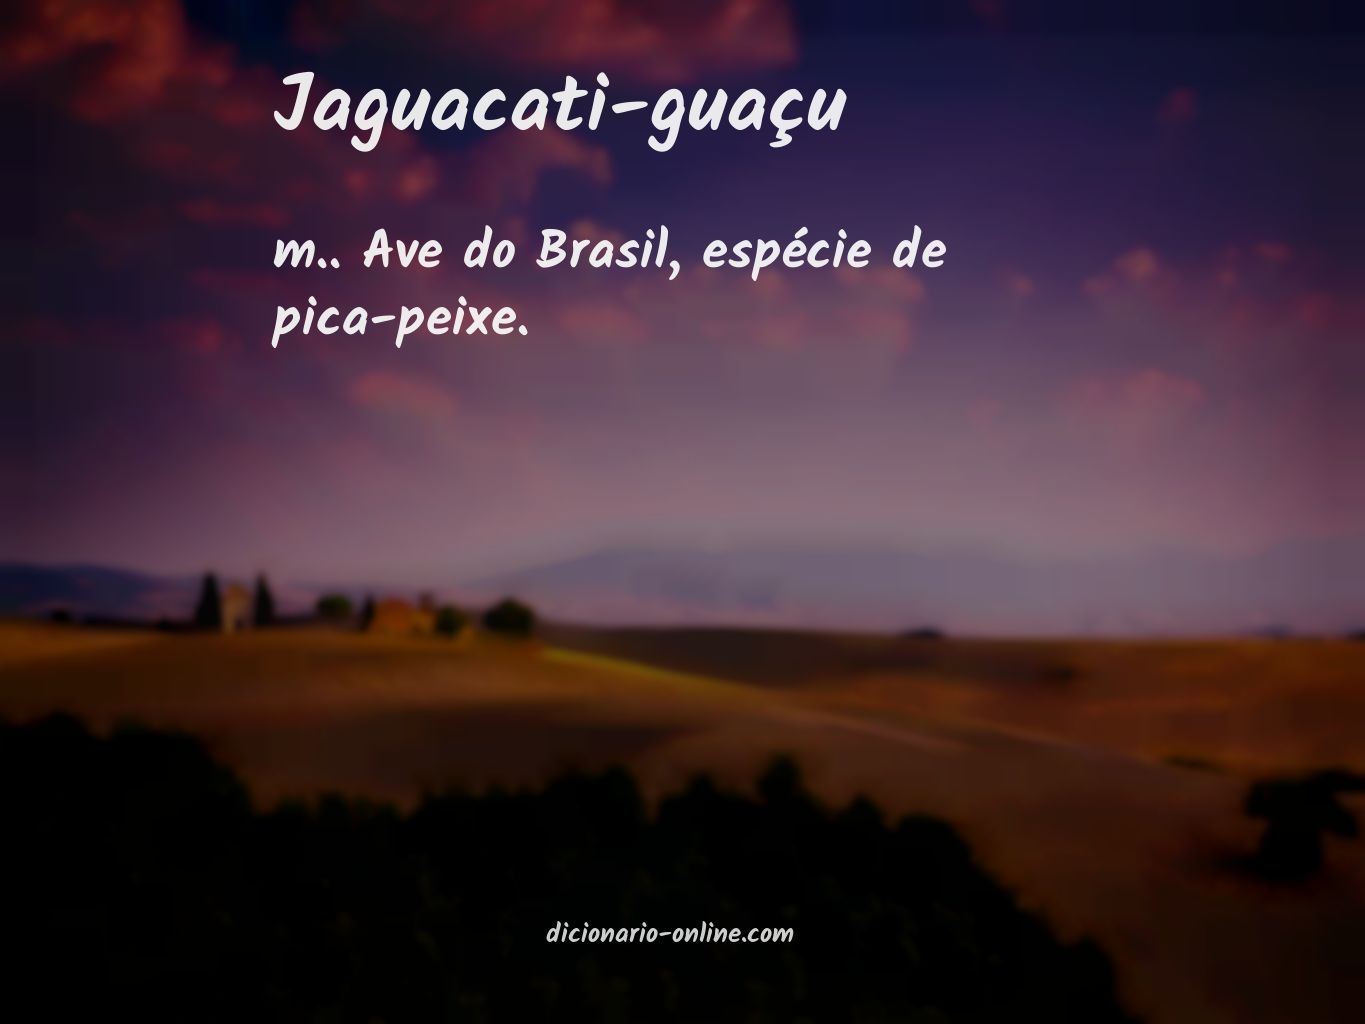 Significado de jaguacati-guaçu